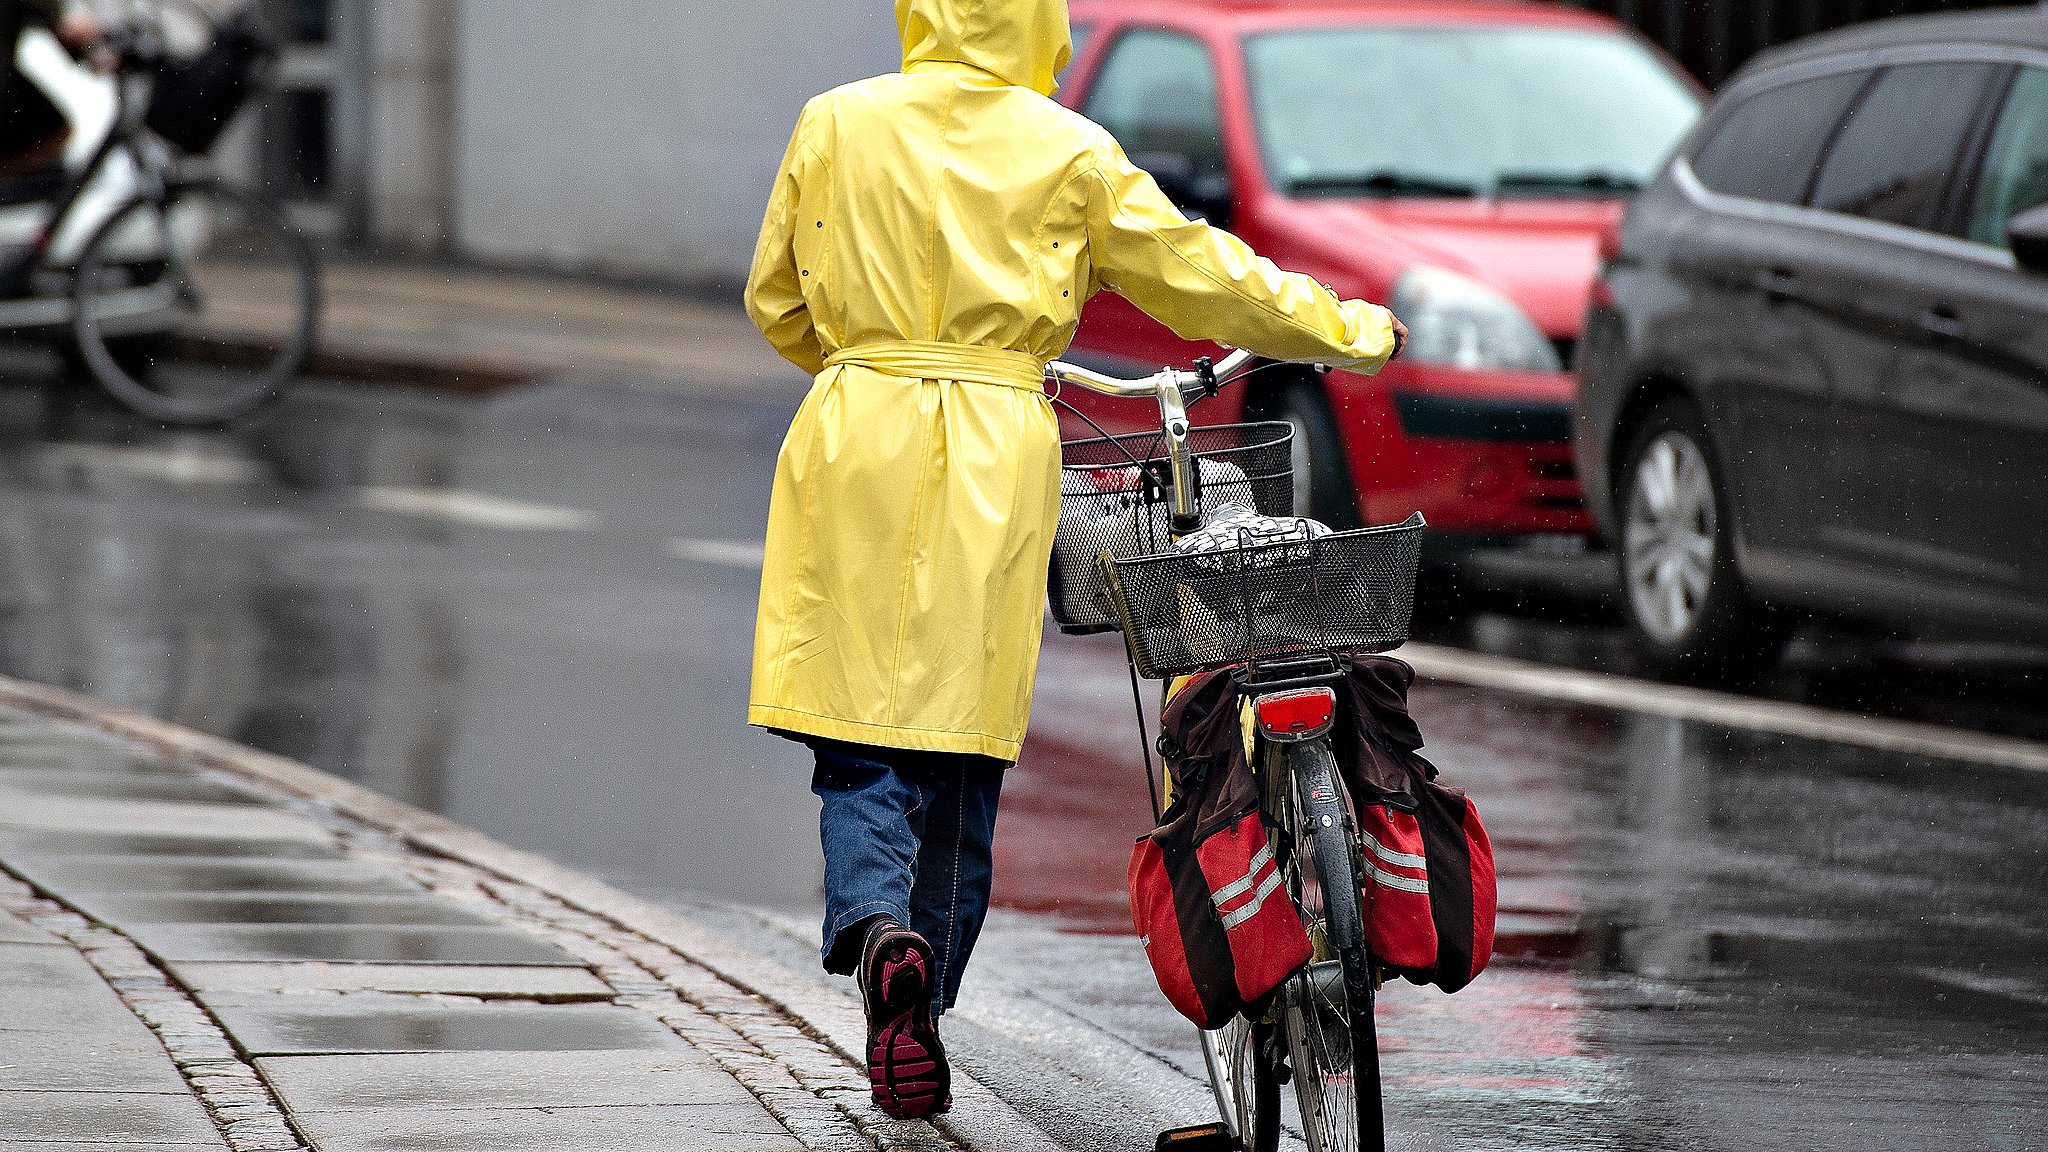 Tirsdag byder på risiko for regn - her får man brug en paraply i tasken | TV2 Nord